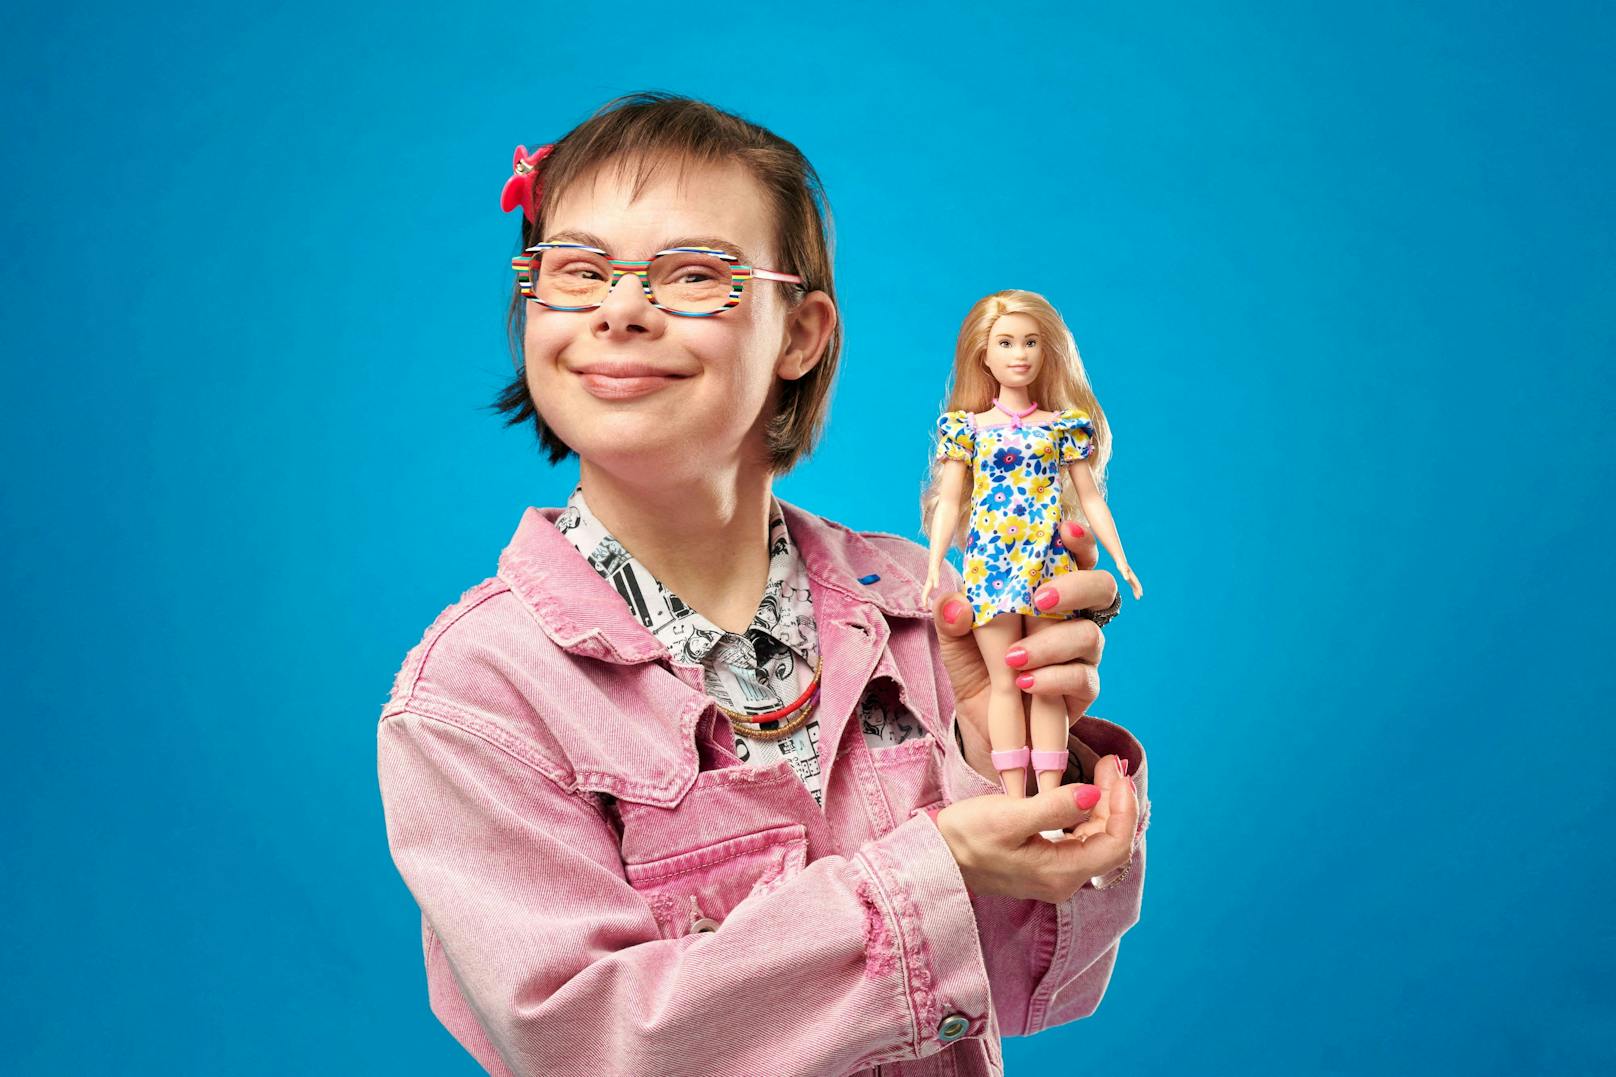 Für die Puppe habe das Unternehmen mit der National Down Syndrome Society (NDSS) in den Vereinigten Staaten zusammengearbeitet. So sollte sichergestellt werden, "dass die Puppe eine Person mit Downsyndrom akkurat repräsentiert".